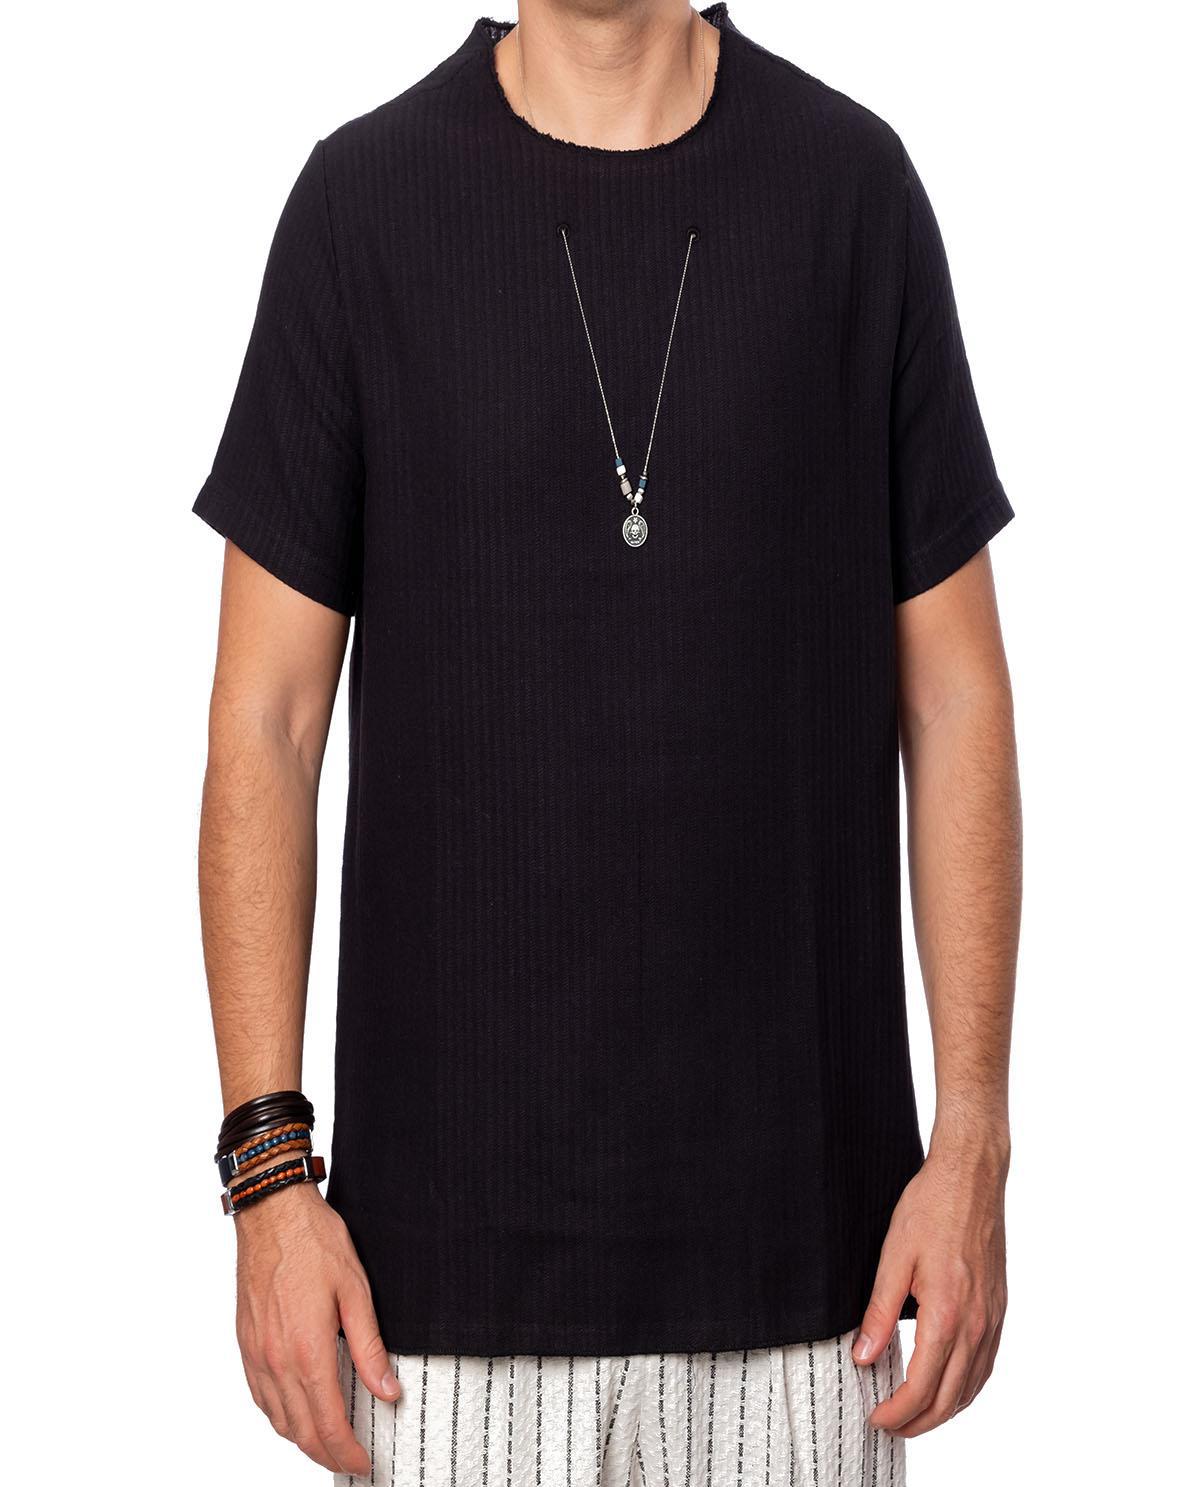 T-shirt manches courtes noir avec accessoire en coton